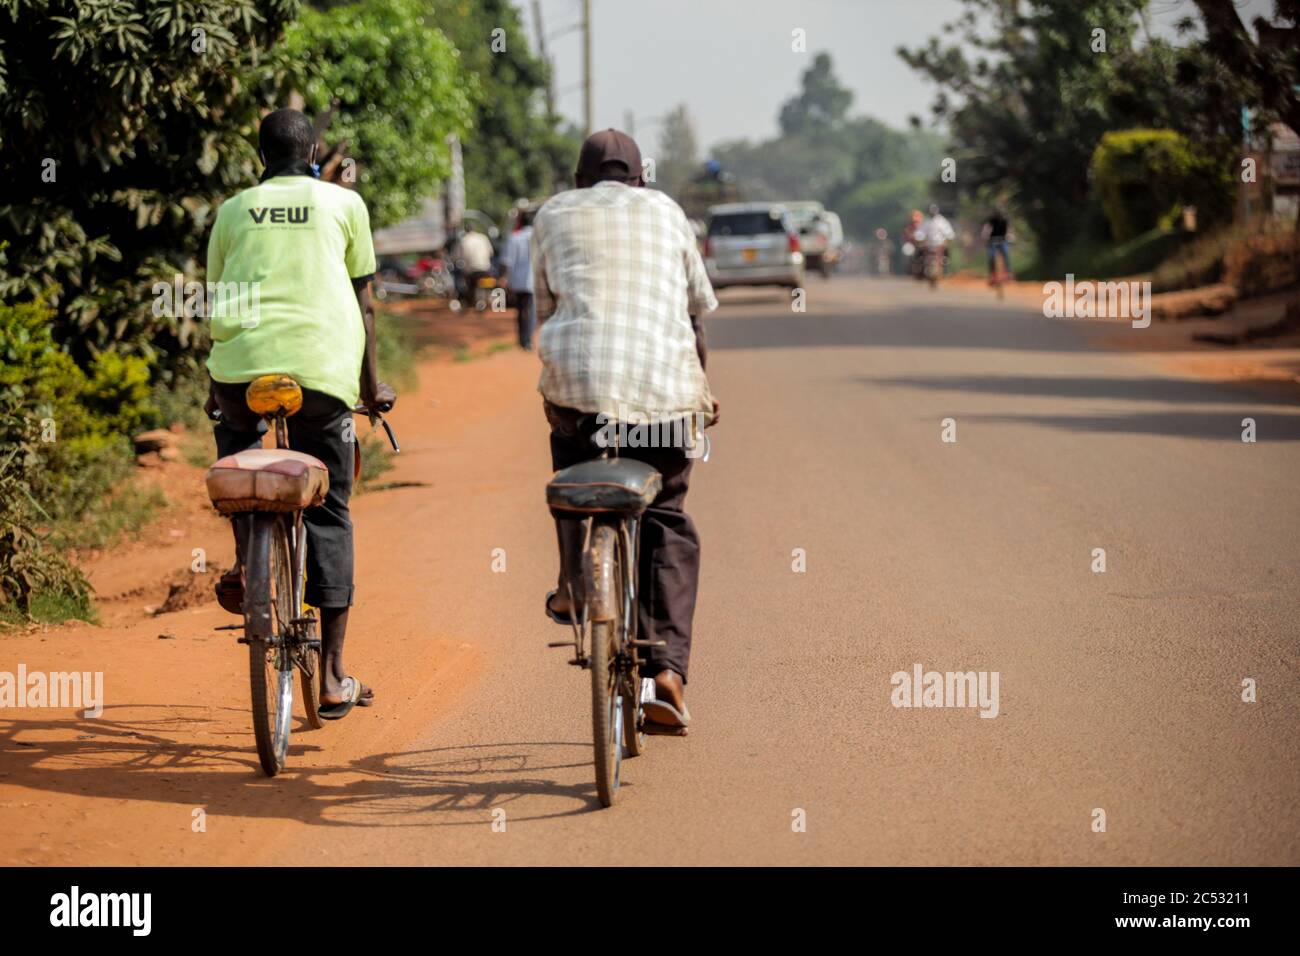 Kampala, Ouganda. 30 juin 2020. Les gens font du vélo le long d'une route à Kampala, capitale de l'Ouganda, le 30 juin 2020. Les gens ont eu recours au cyclisme comme moyen de transport favorable dans le contexte de la pandémie COVID-19 en Ouganda. Crédit: Hajarah Nalwadda/Xinhua/Alamy Live News Banque D'Images